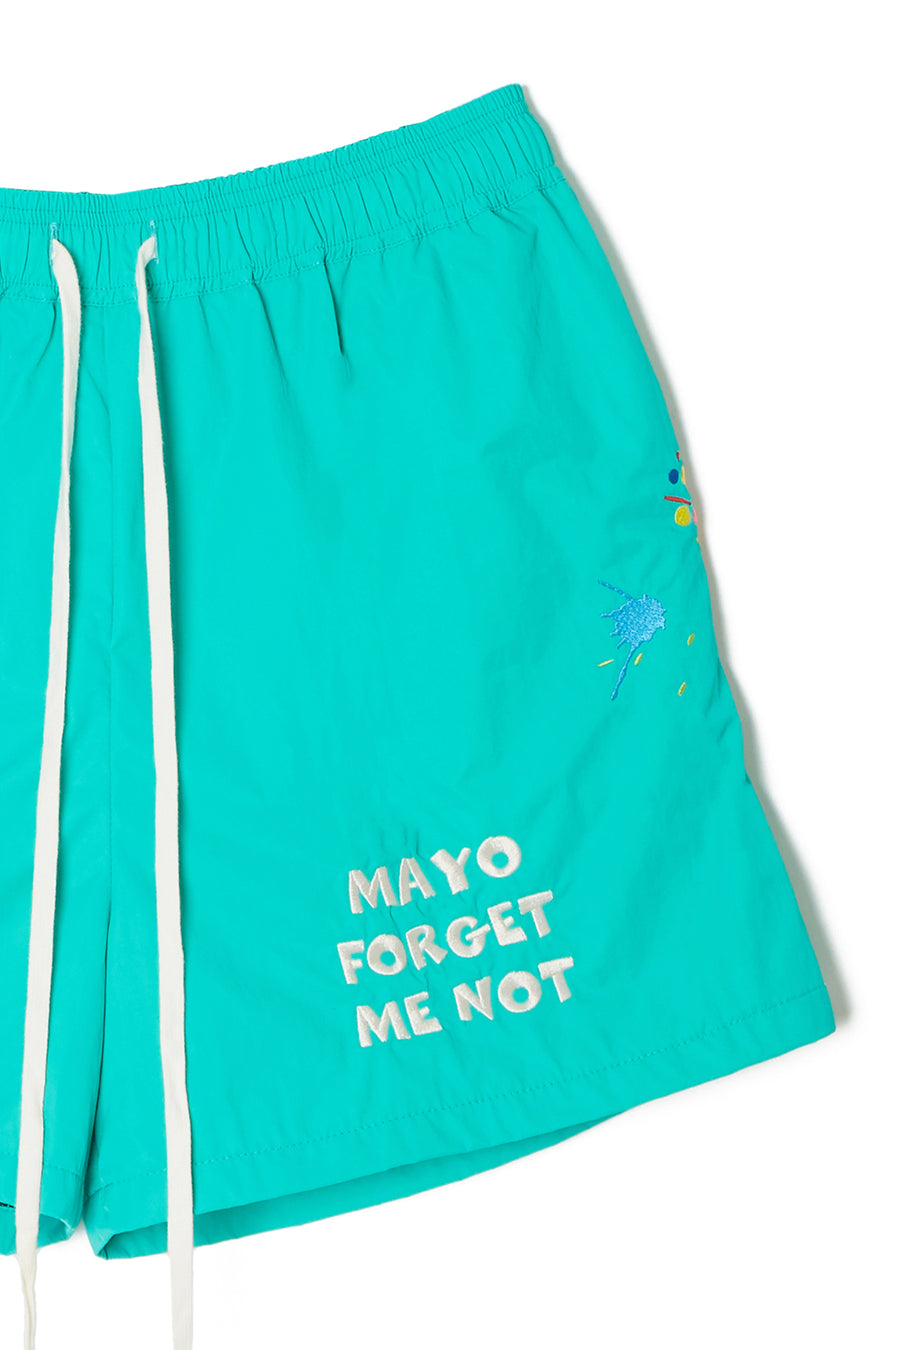 MAYO PAINT Embroidery Swim Shorts - KINMIYA BLUE